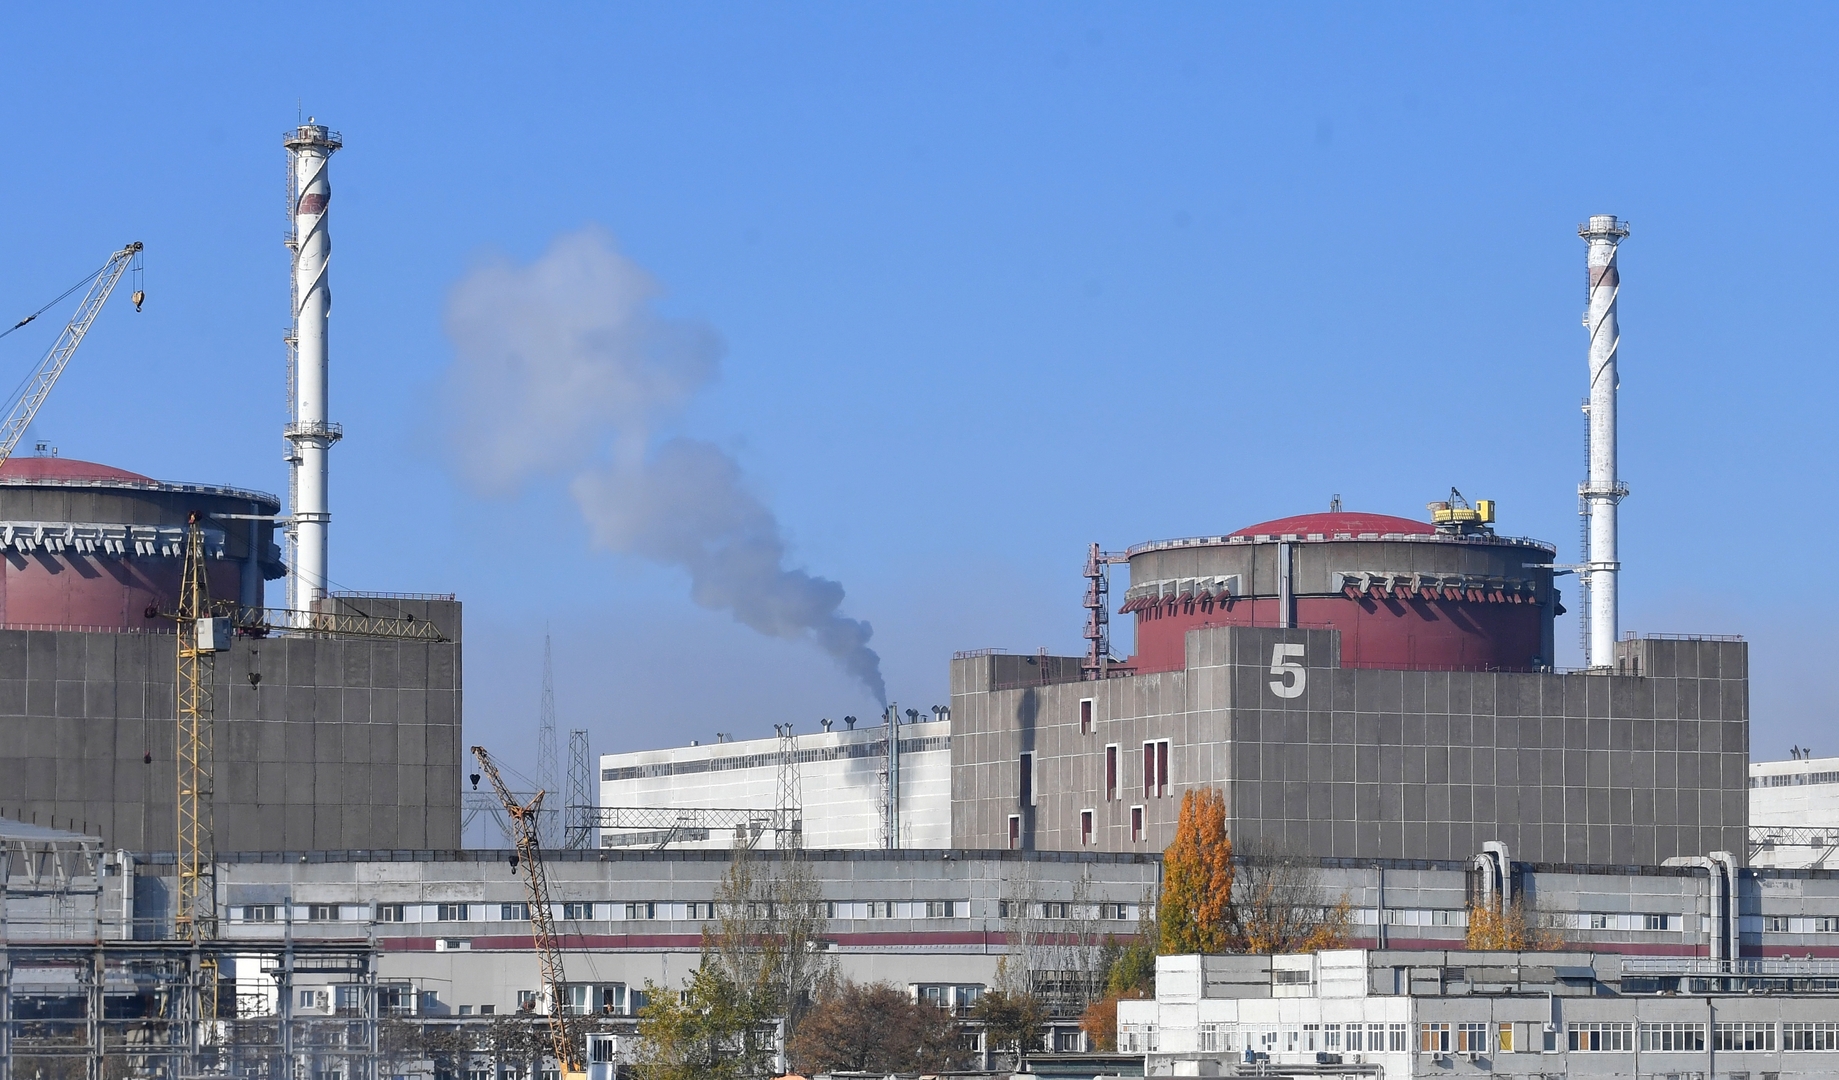 خبراء الوكالة الدولية للطاقة الذرية يرصدون انفجارات قرب محطة زابوروجيه النووية